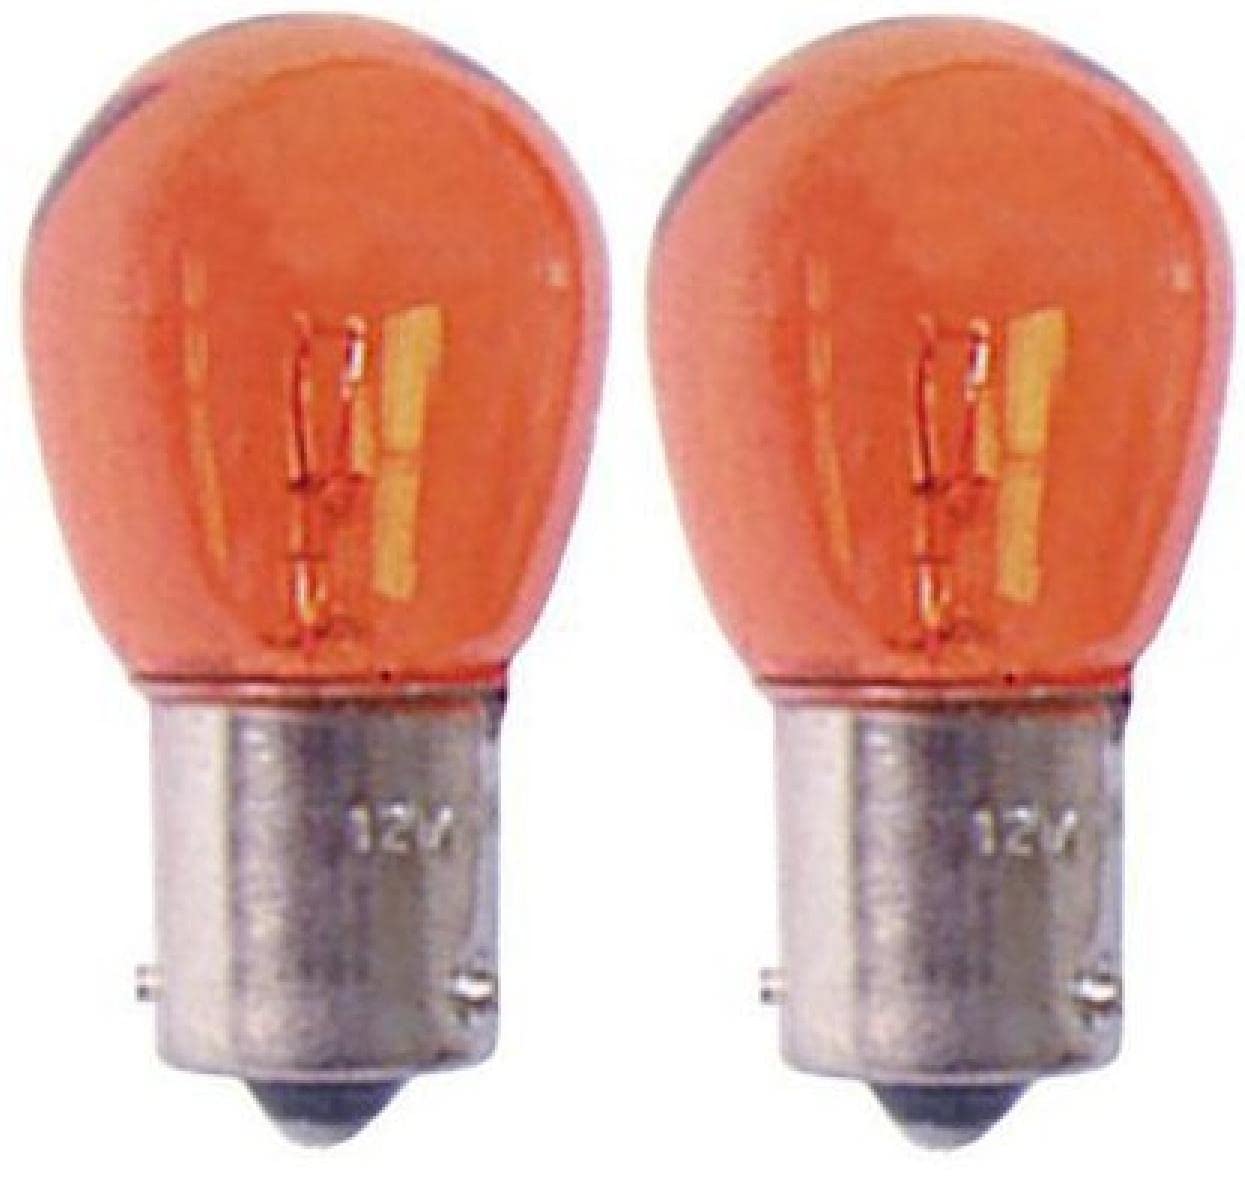 Sumex TESA221 Glühbirne 12 V 21 W, Gelb von Sumex